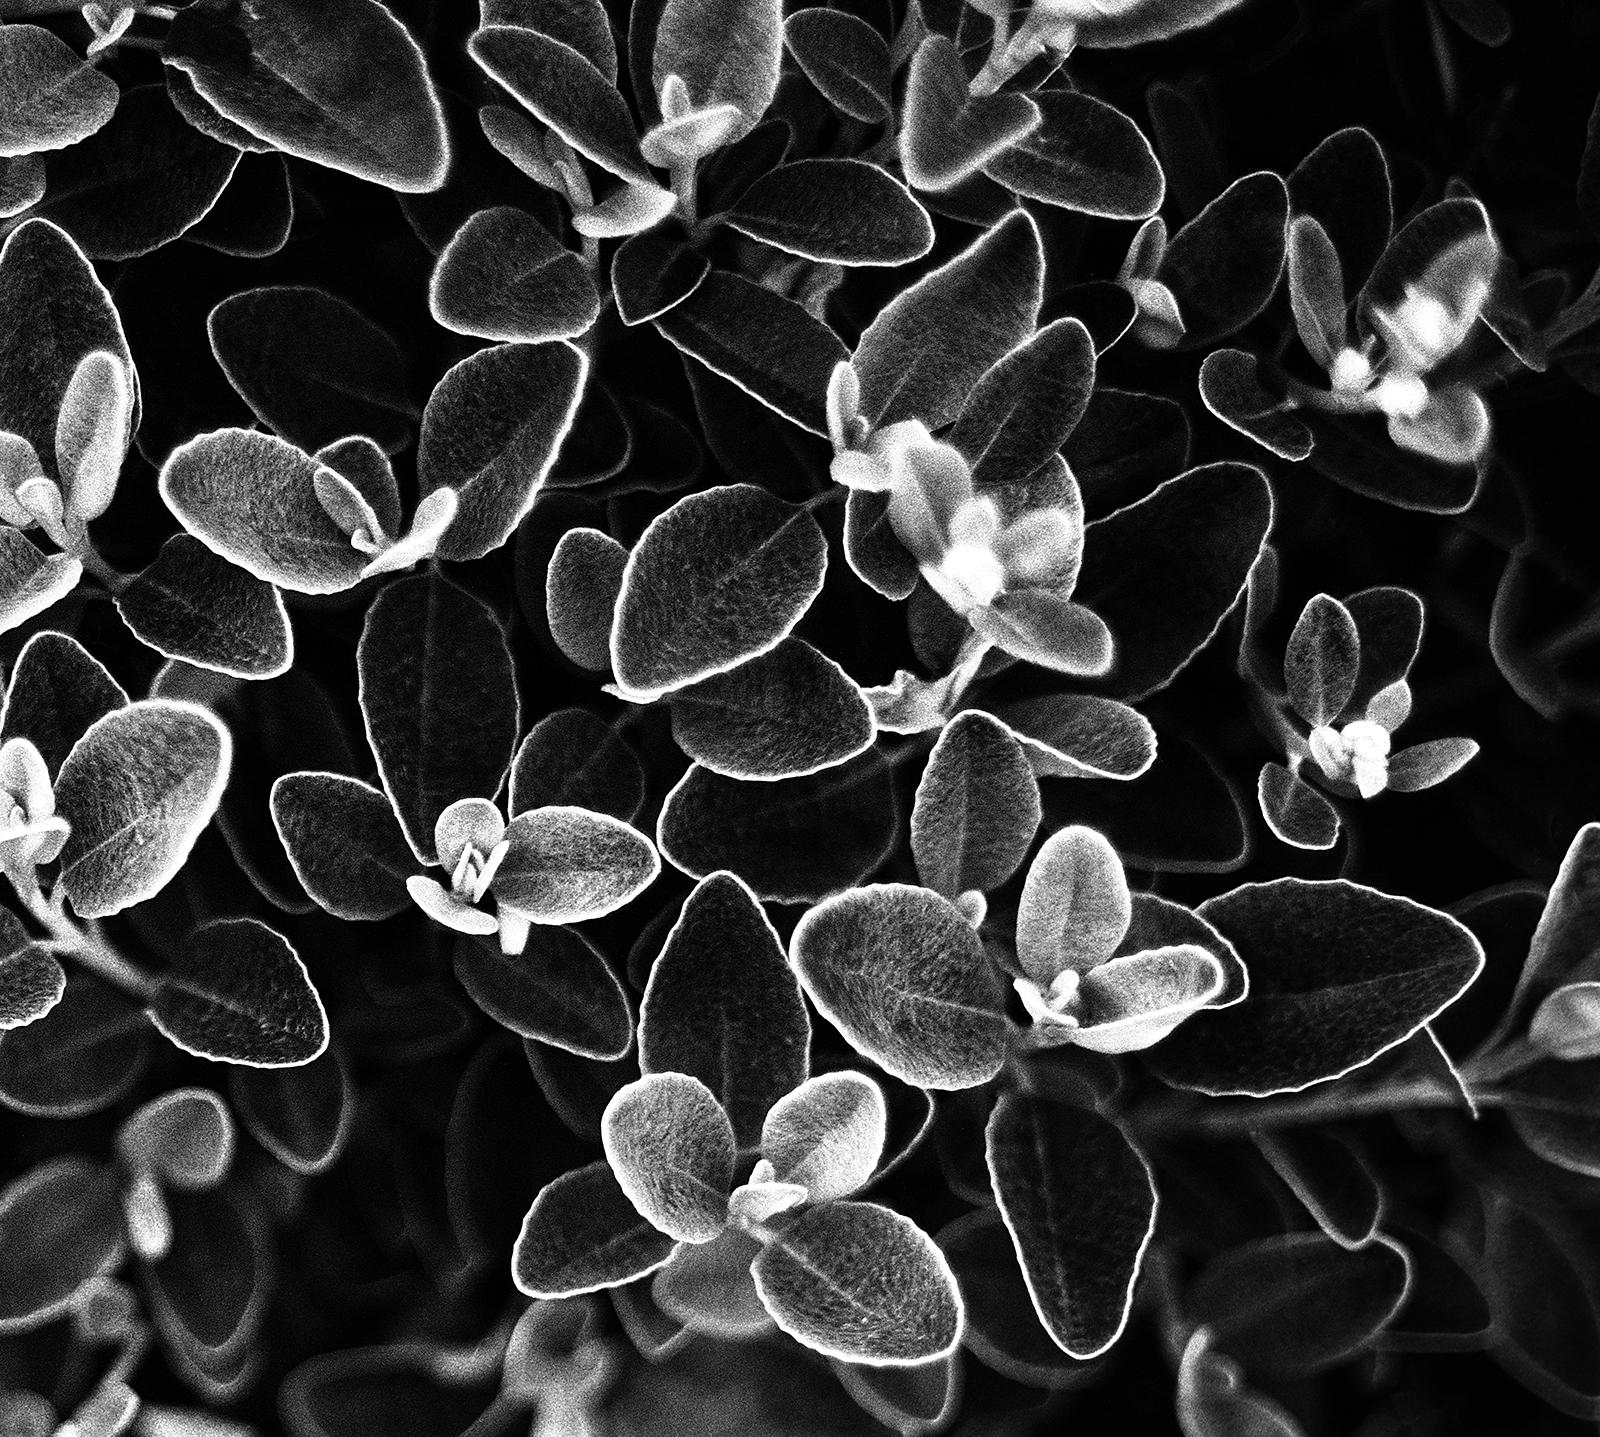 Blumenblumen- signierter Kunstdruck in limitierter Auflage, Schwarz-Weiß- Naturfoto, zeitgenössisch – Photograph von Ian Sanderson